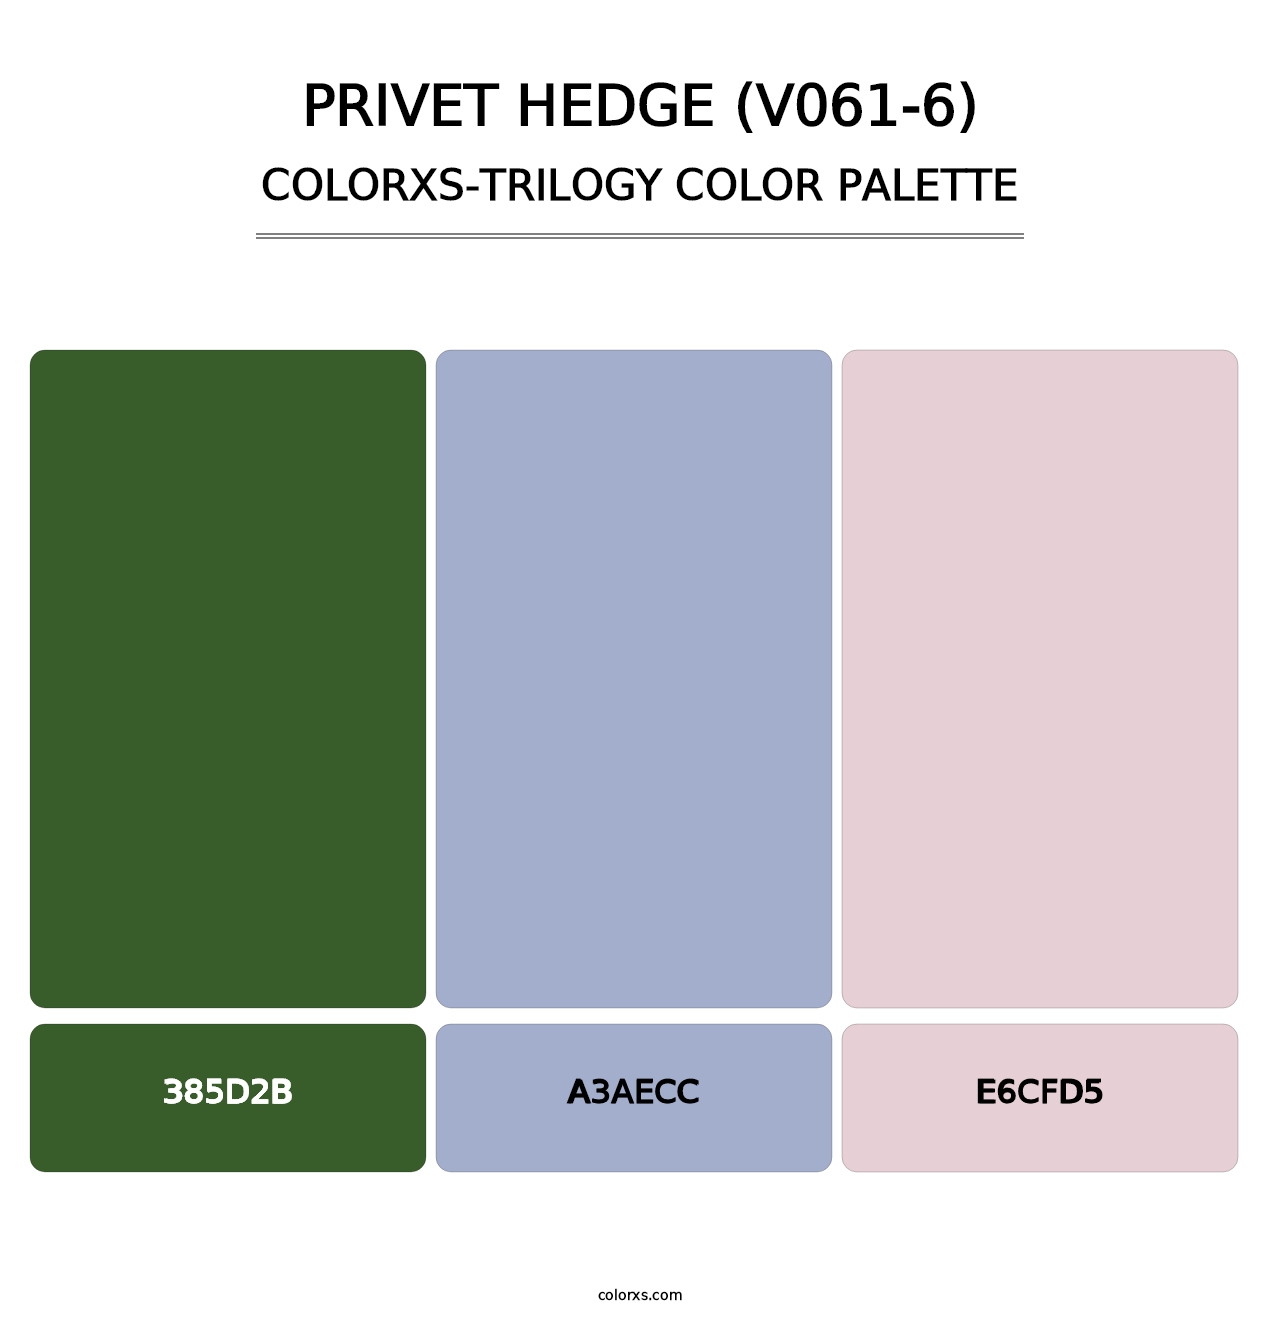 Privet Hedge (V061-6) - Colorxs Trilogy Palette